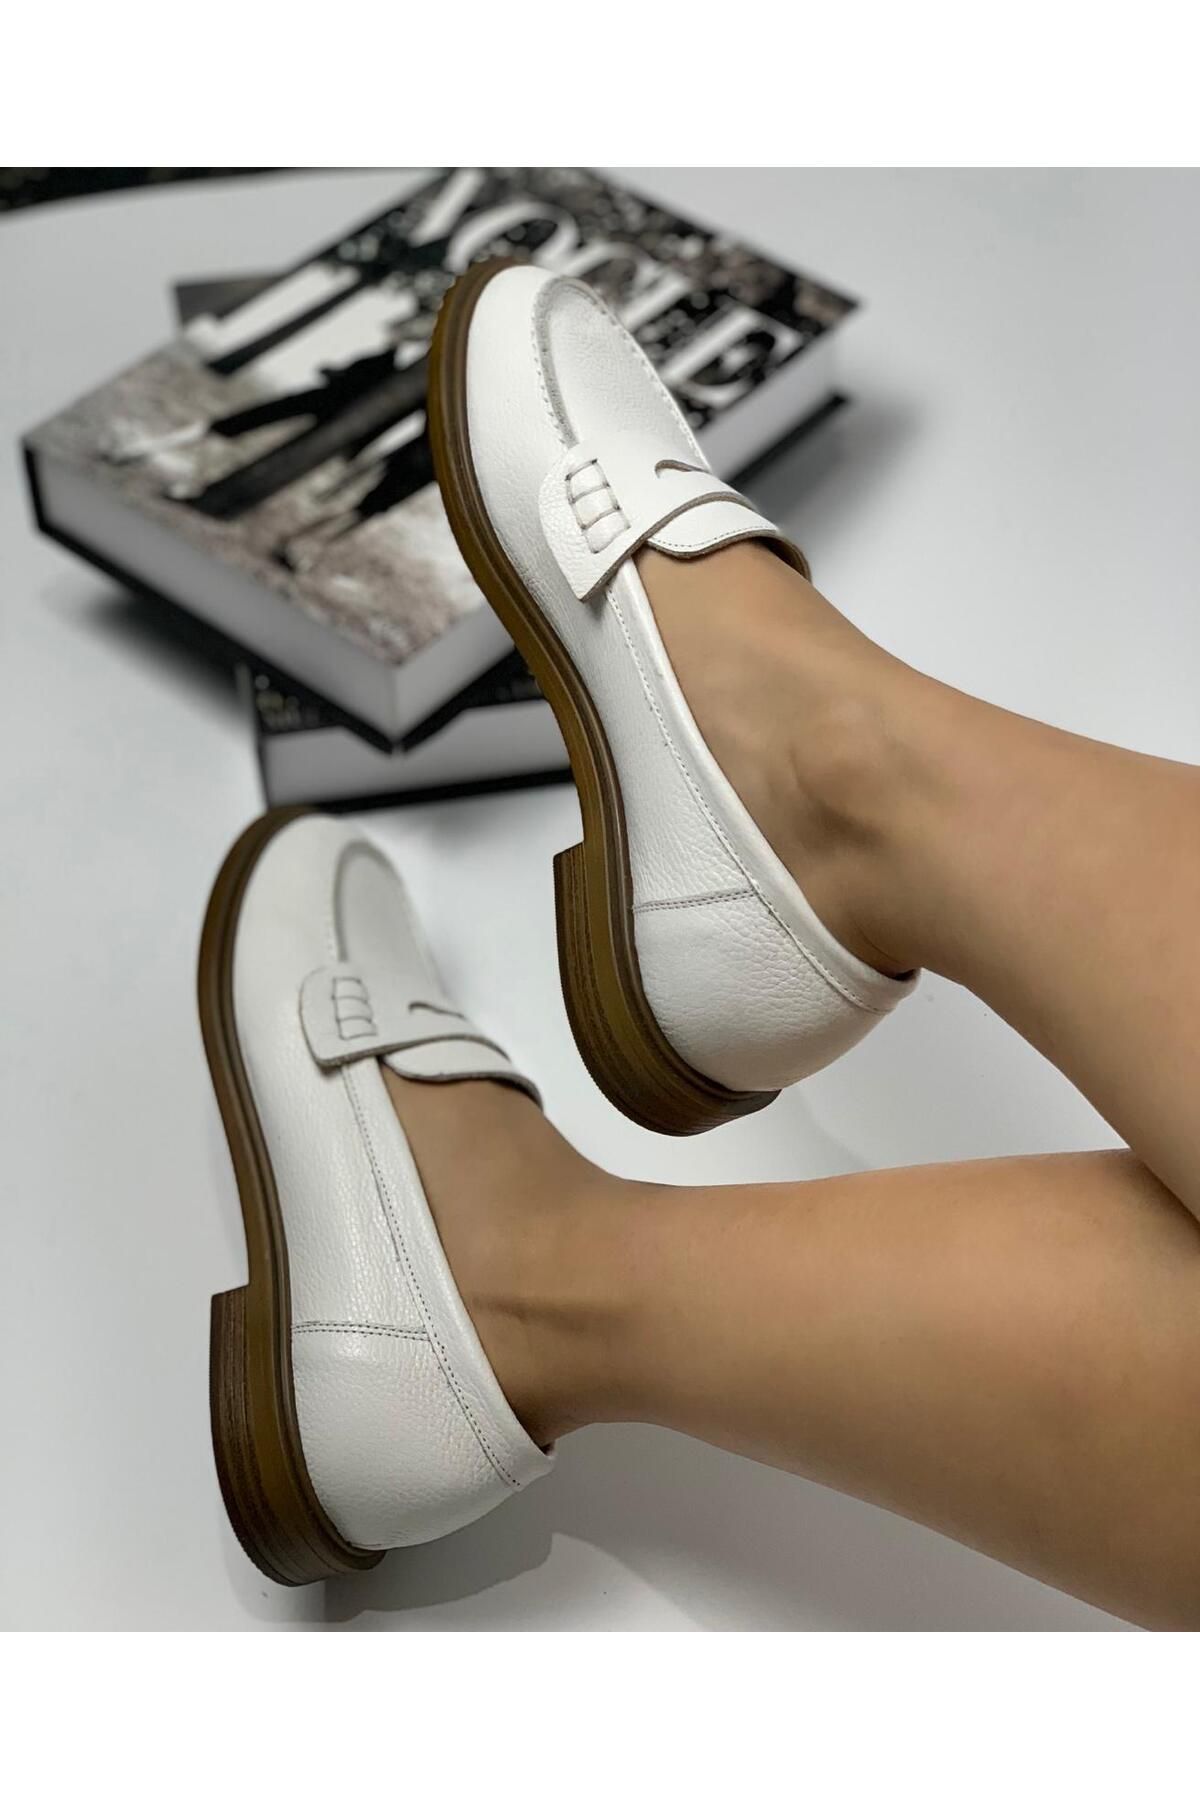 FNG Store İçi Dışı Hakiki Deri Kadın Loafer Günlük Klasik Ayakkabı